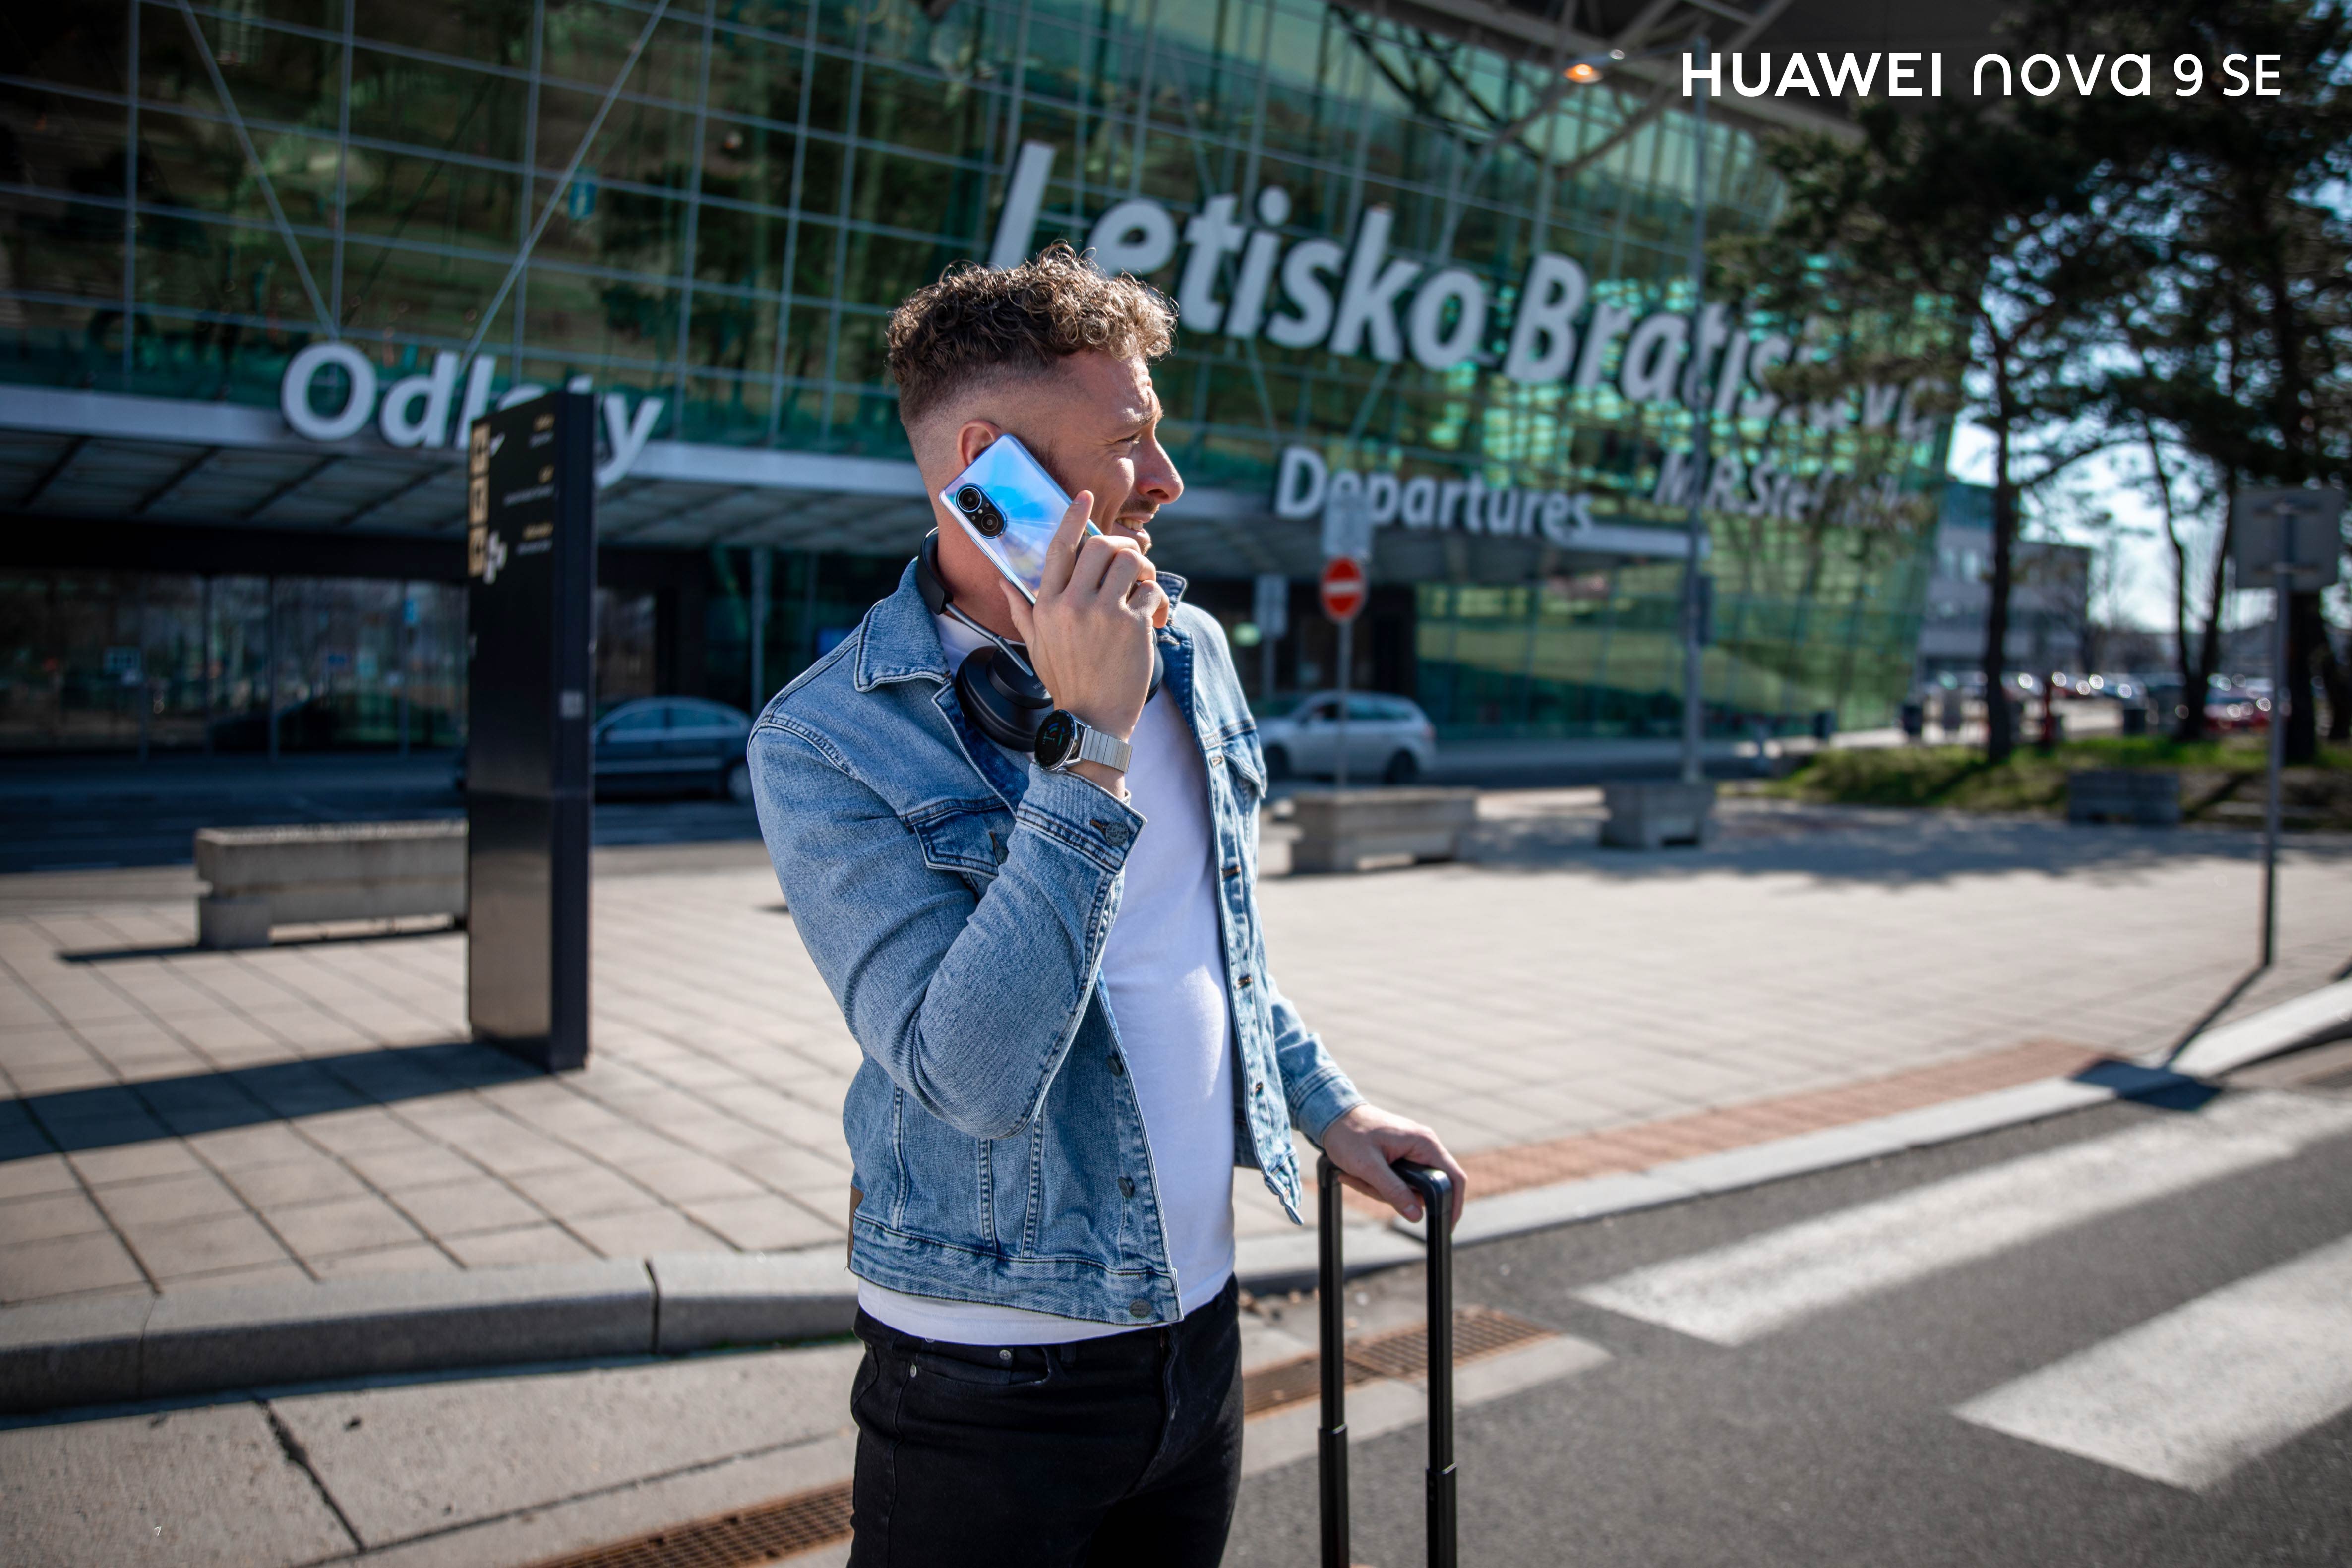 Novinka od Huawei s prémiovými vlastnosťami ťa nikdy nenechá v štichu